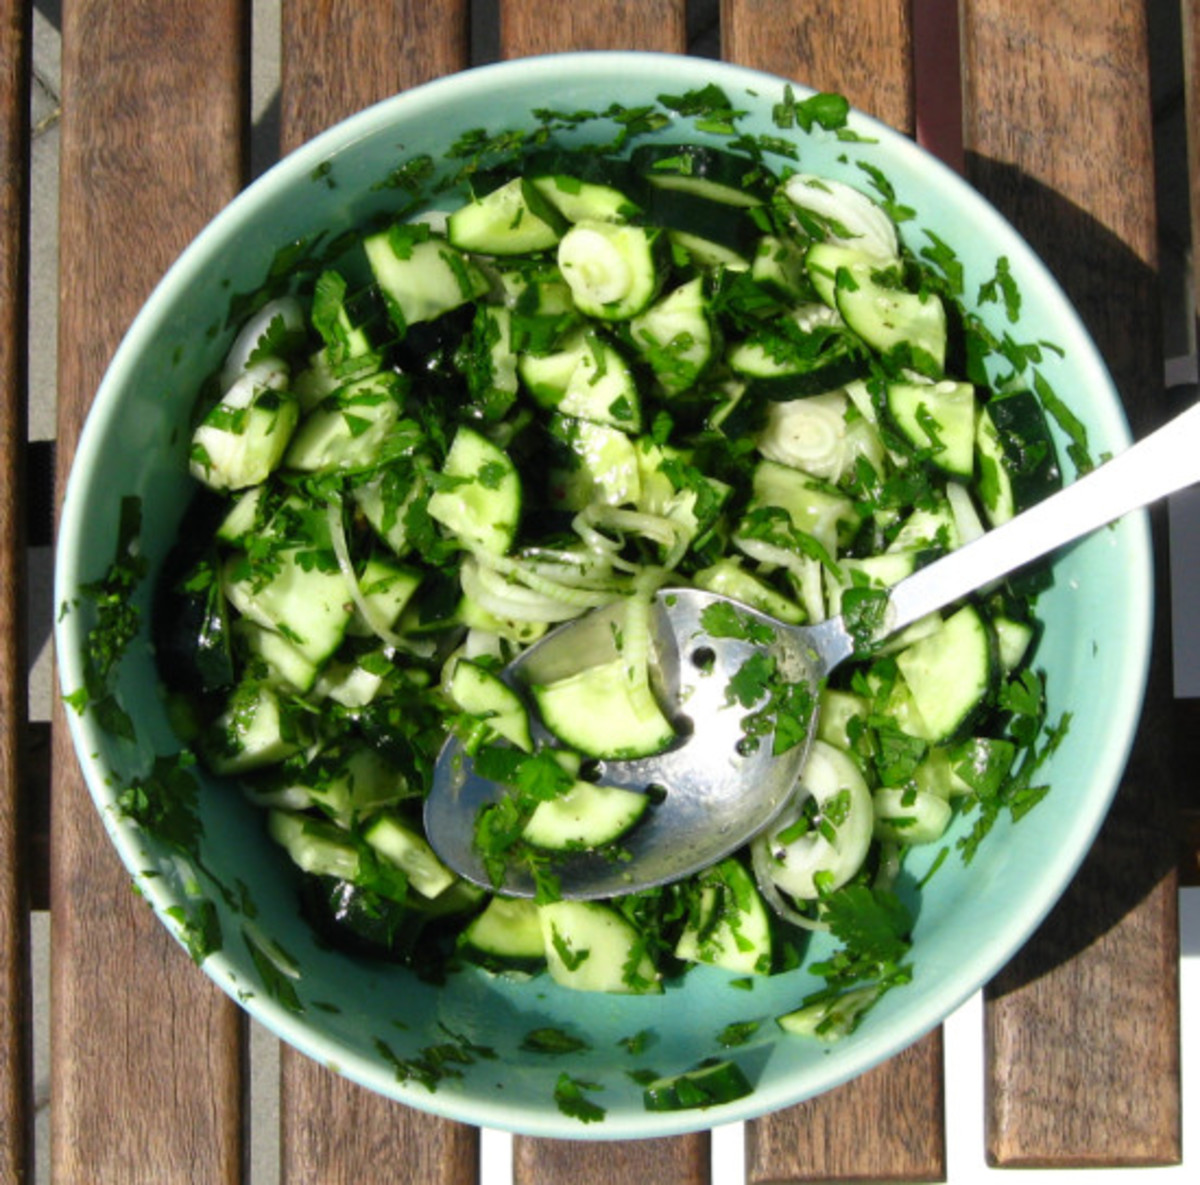 Green salad recipes, cucumbers